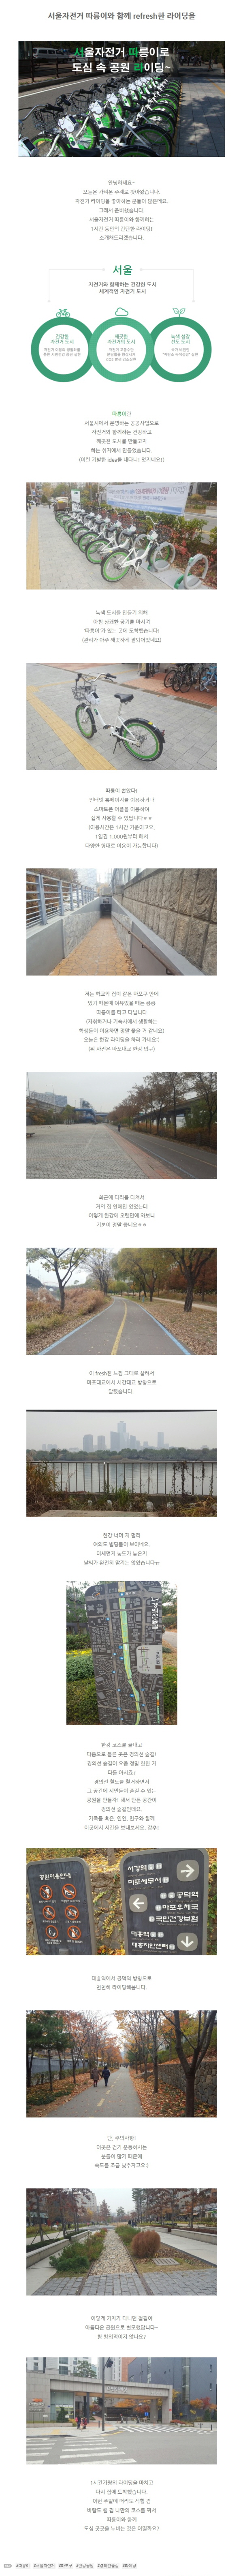 [한수원그린서포터즈] 서울자전거 '따릉이'로 한강공원, 경의선 숲길 라이딩